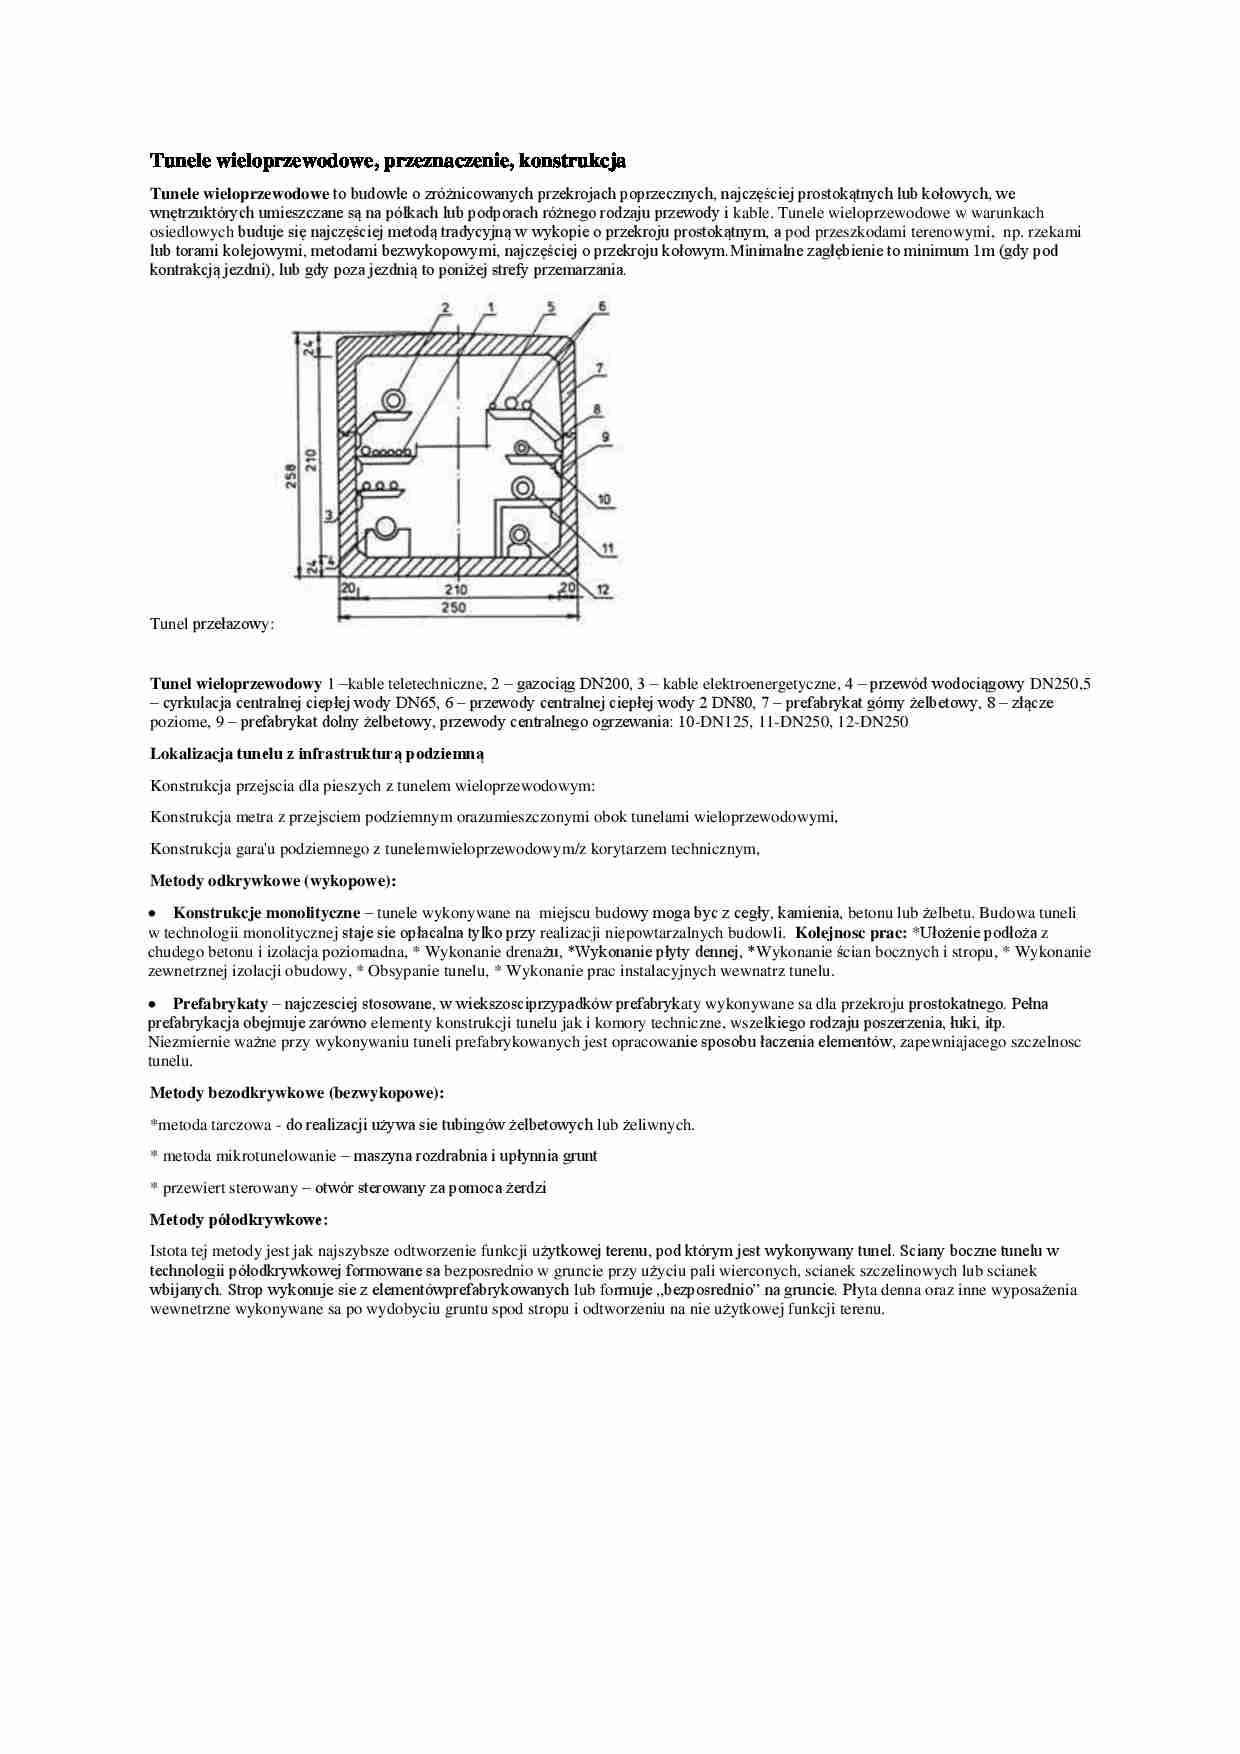 Tunele wieloprzewodowe-opracowanie - strona 1